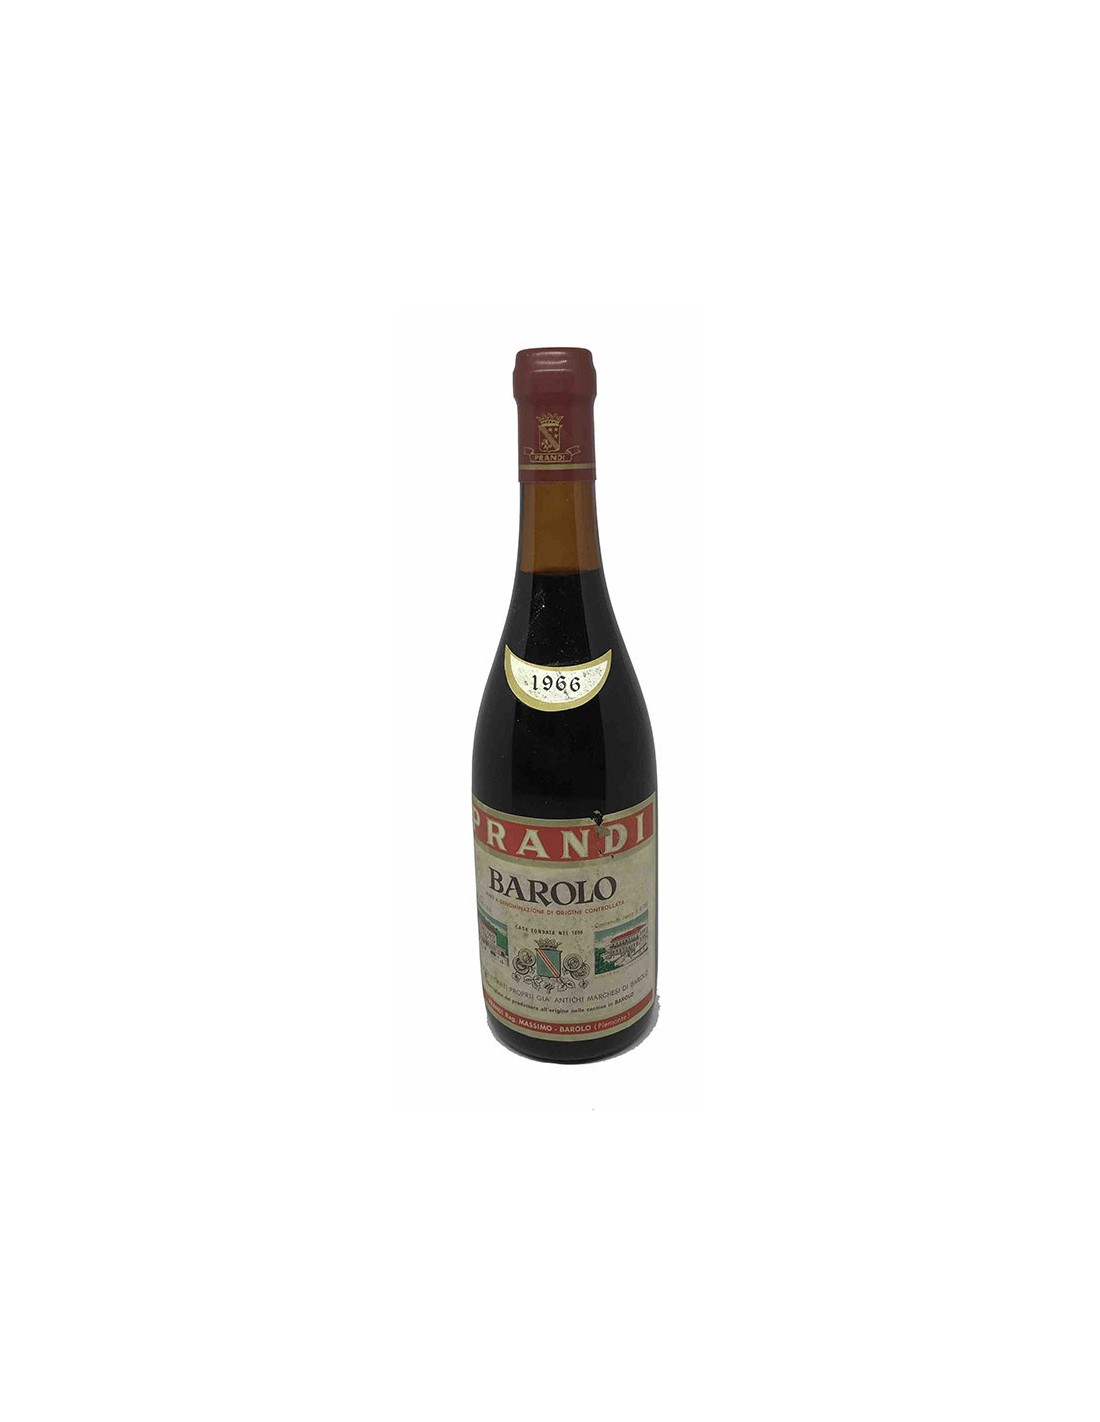 BAROLO 1966 PRANDI MASSIMO Grandi Bottiglie